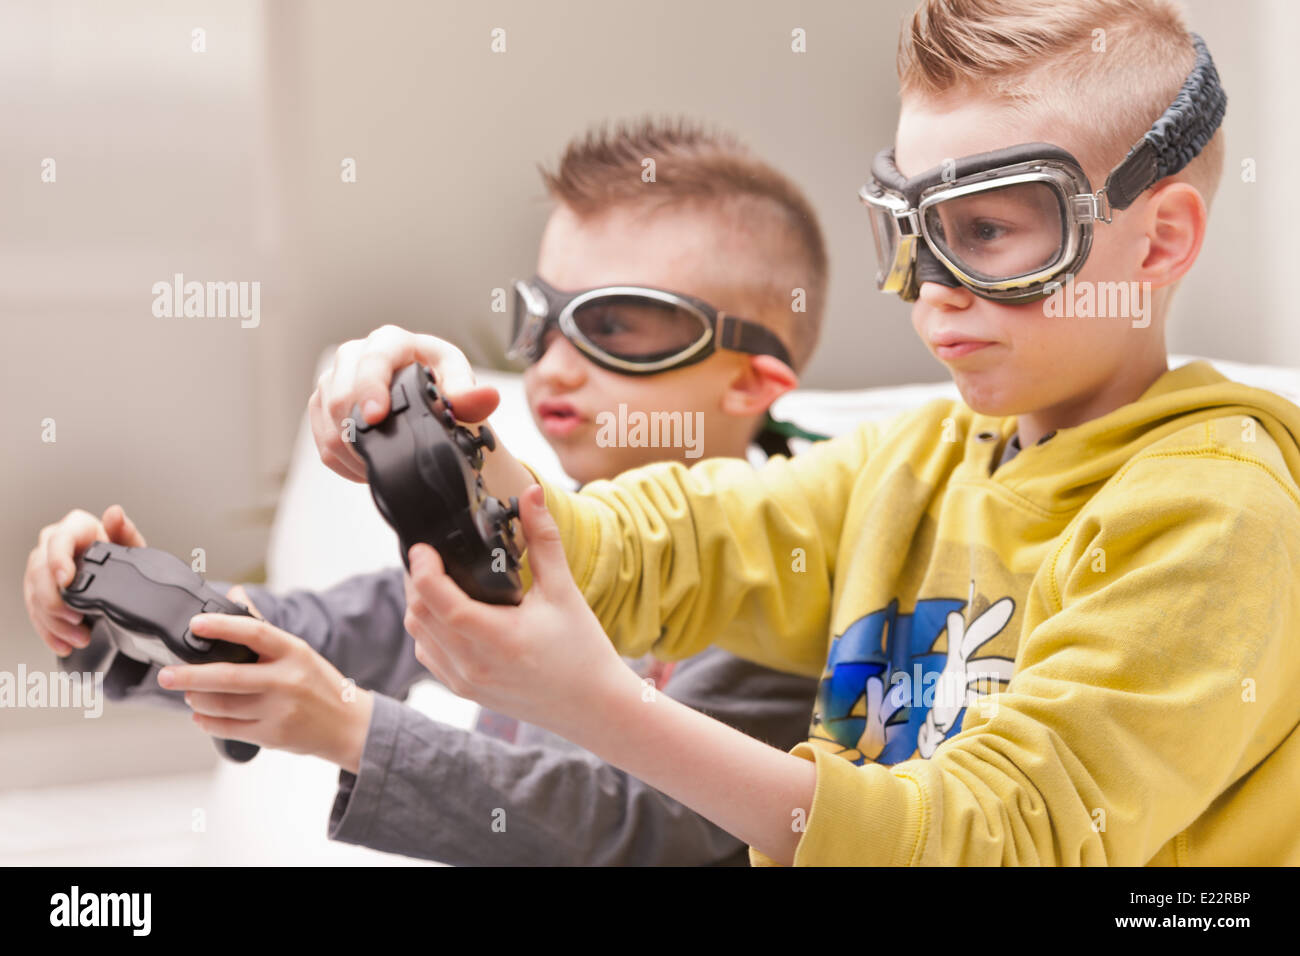 Un couple d'enfants faisant semblant d'être pilotes et de jouer à des jeux vidéo Banque D'Images